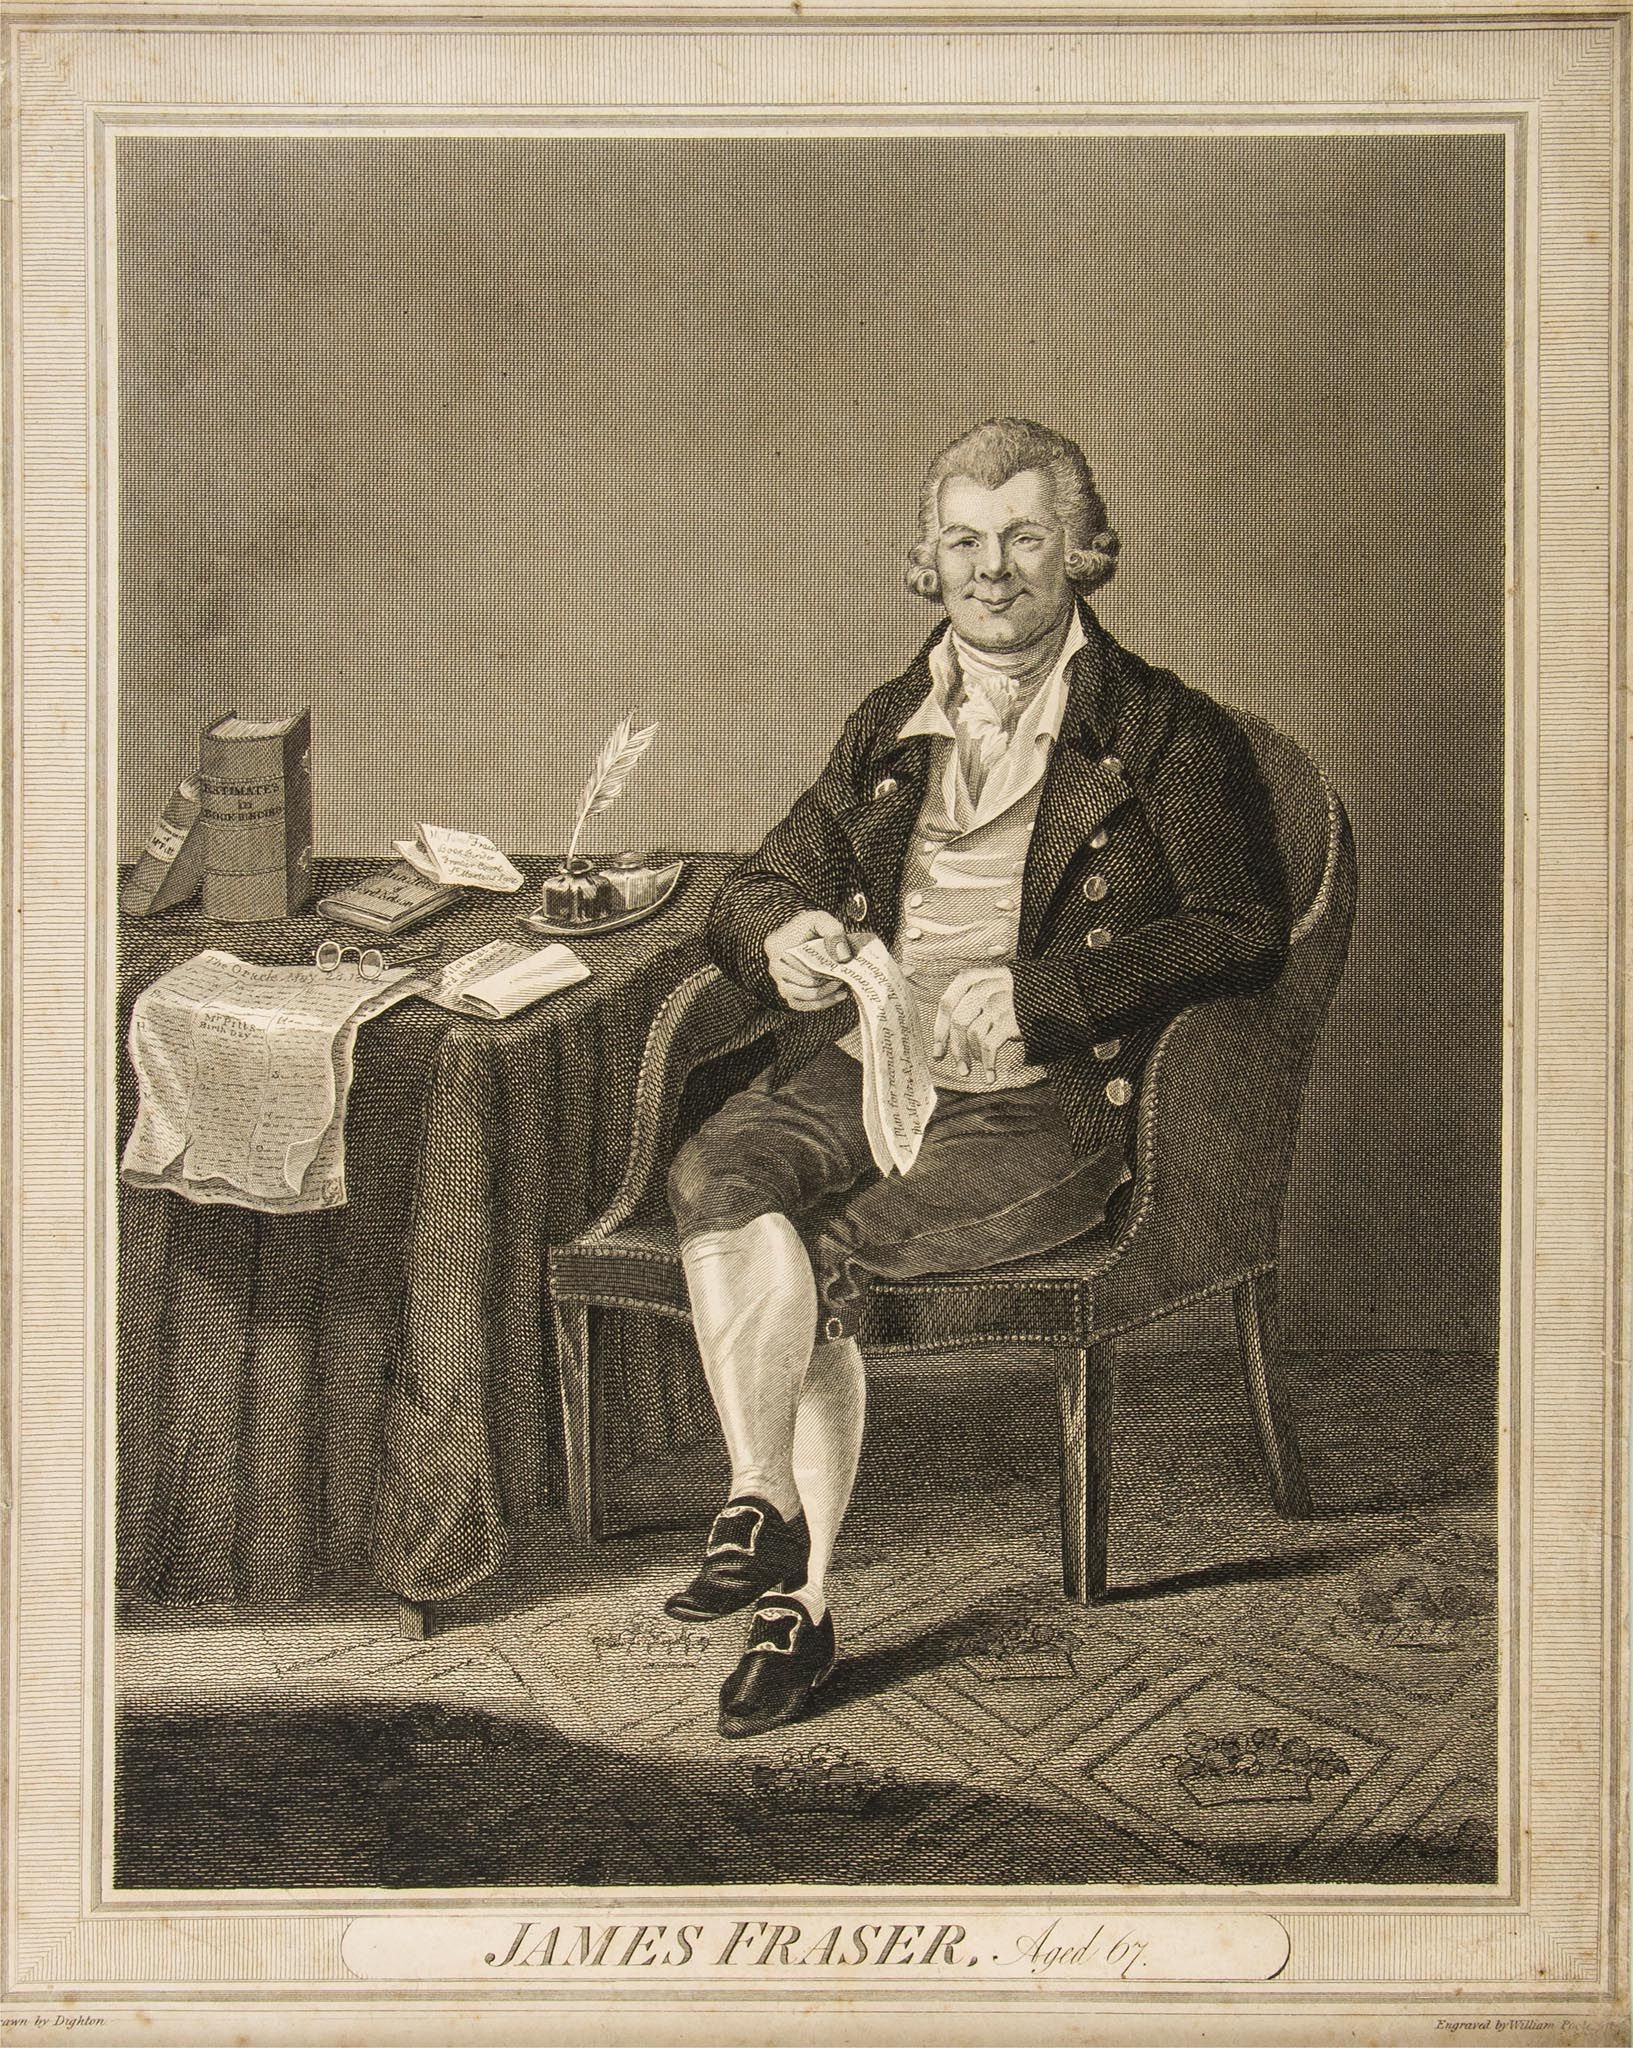 James Fraser, Aged 67, engraved portrait by William Poole after Robert Dighton James Fraser, Aged